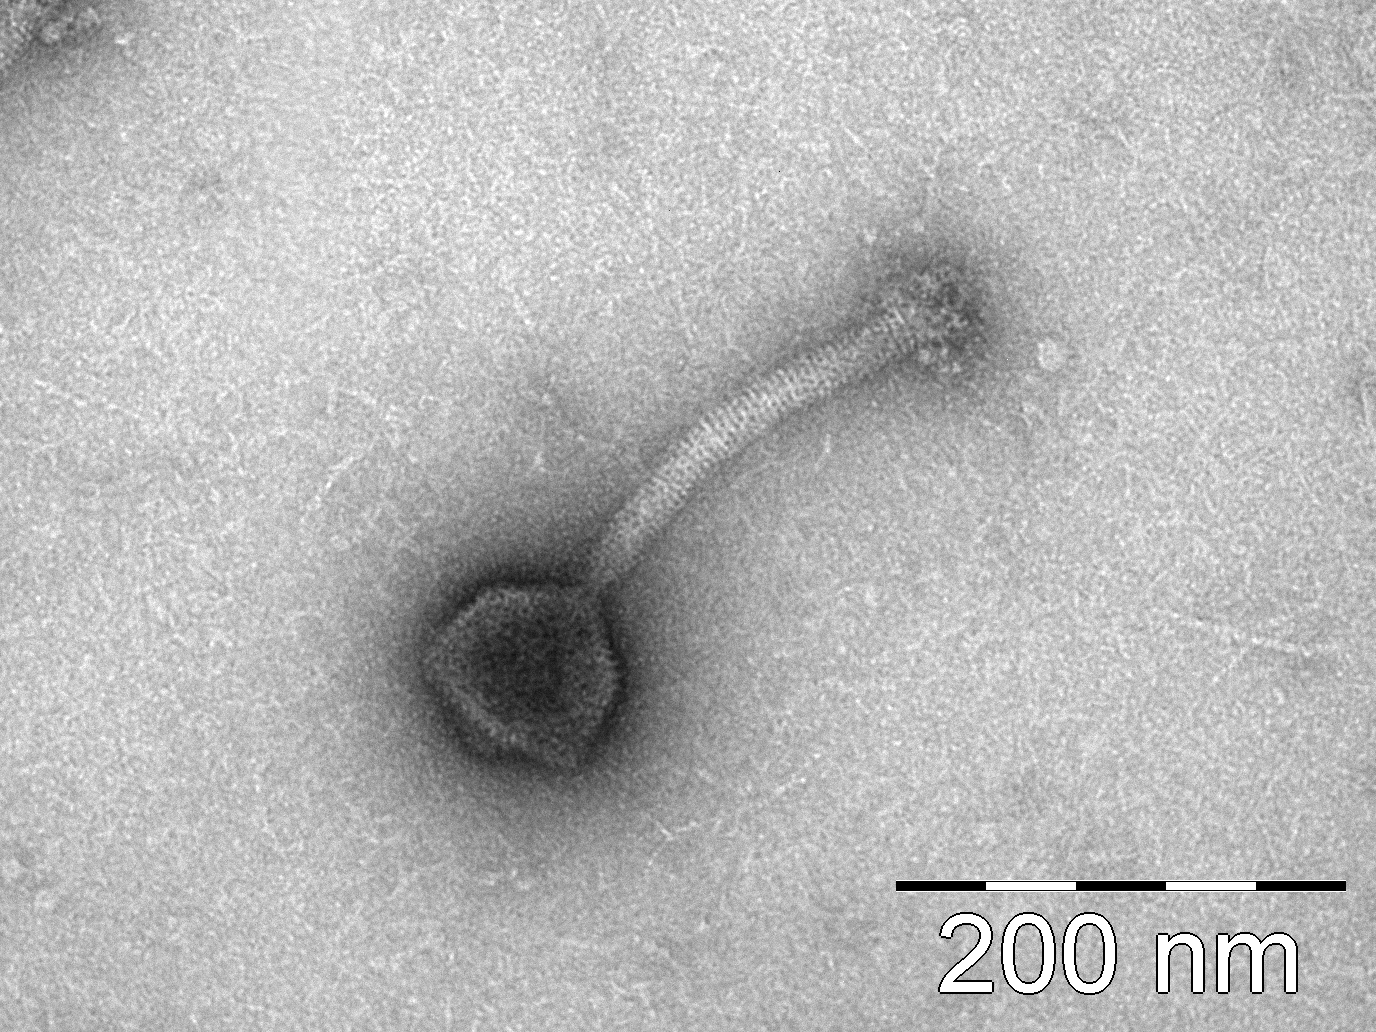 Listeria Phage SiL2, vom PTC Phage Technology Center GmbH, Bild wurde am MRI (FS2) gemacht